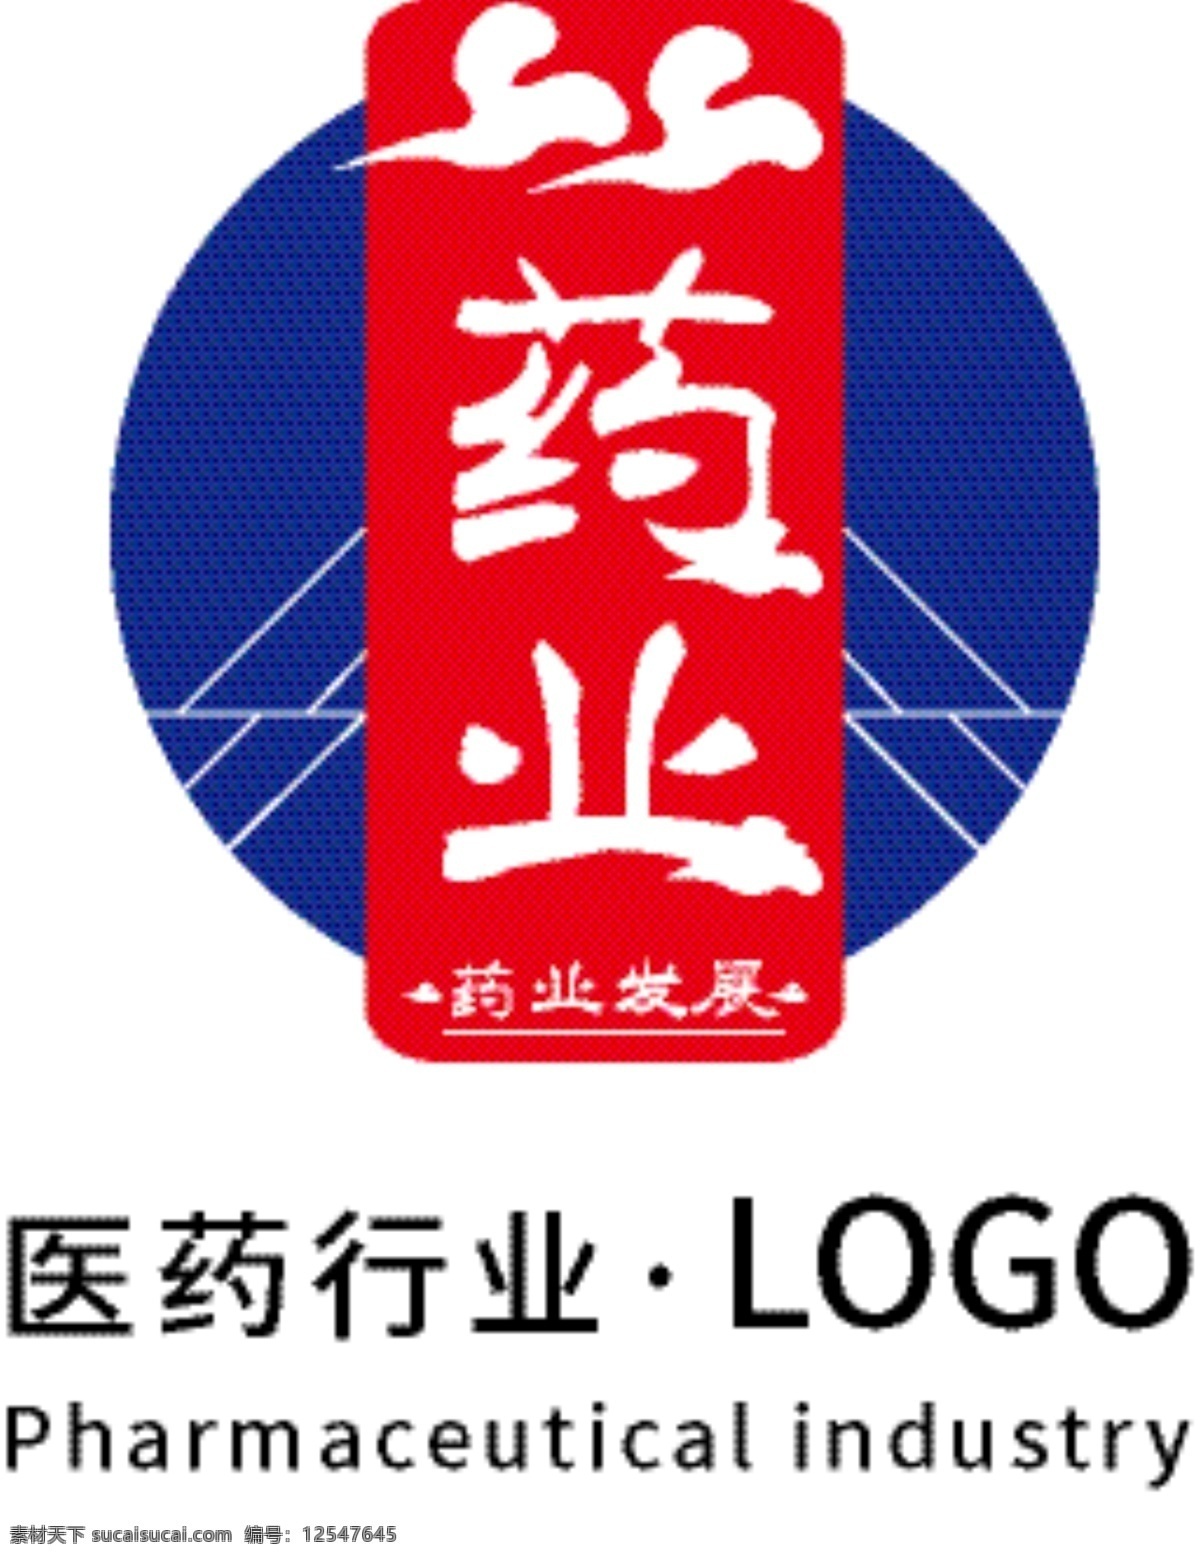 医药行业 logo 通用 模版 祥云 中 国风 撞 色 中国风 撞色